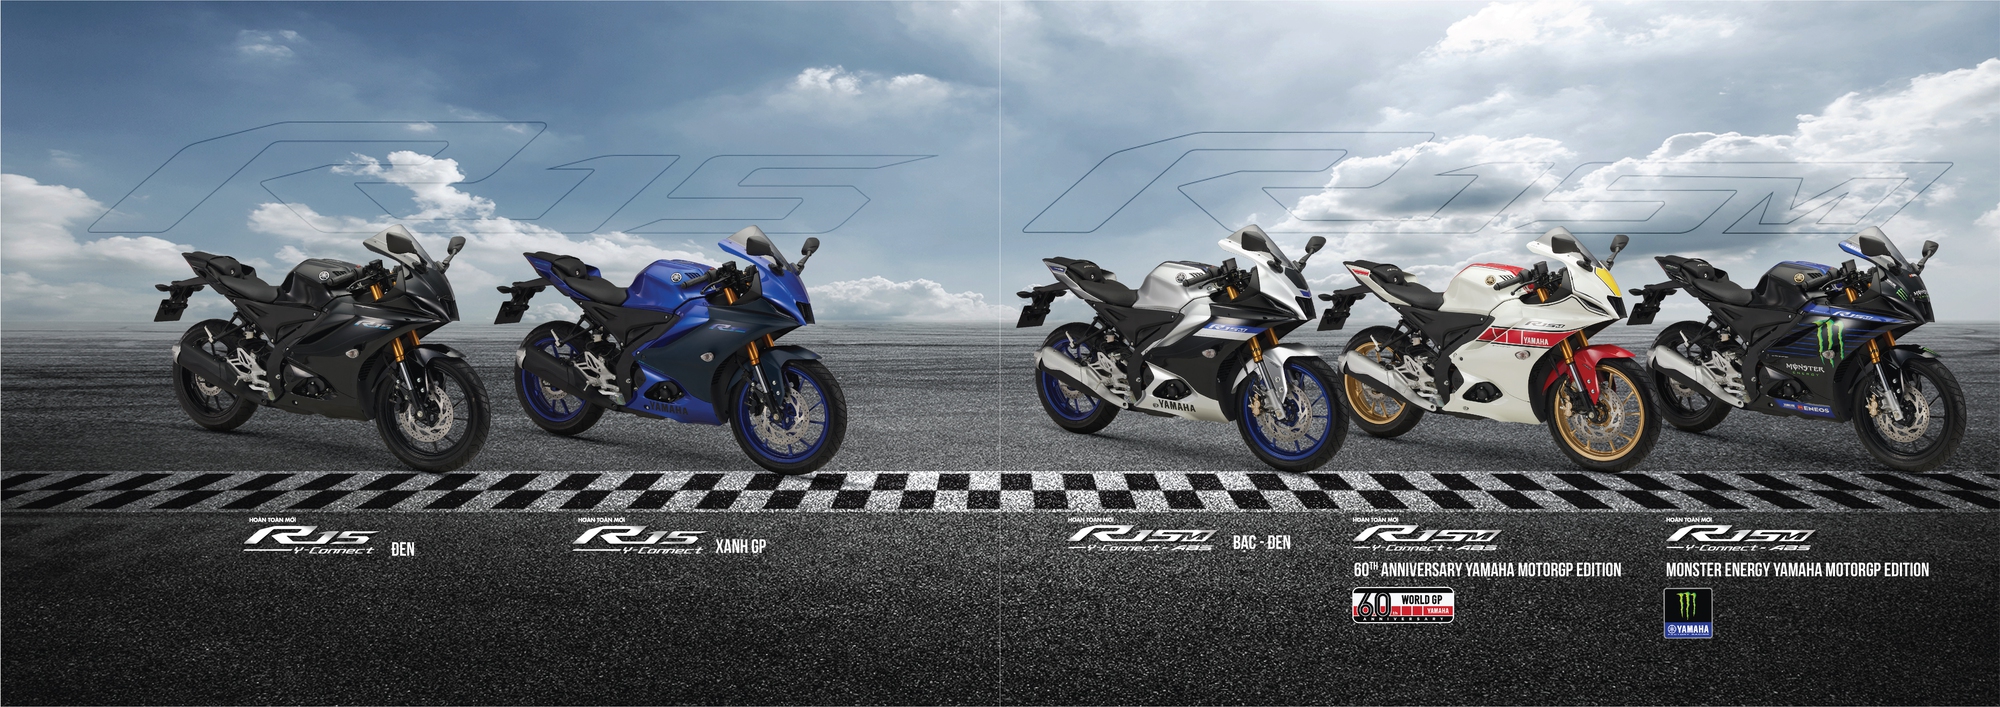 &quot;Siêu ứng dụng&quot; Y-Connect trên xe thể thao Yamaha YZF-R15V4 và YZF-R15M: Cầu nối người dùng với xe máy - Ảnh 1.